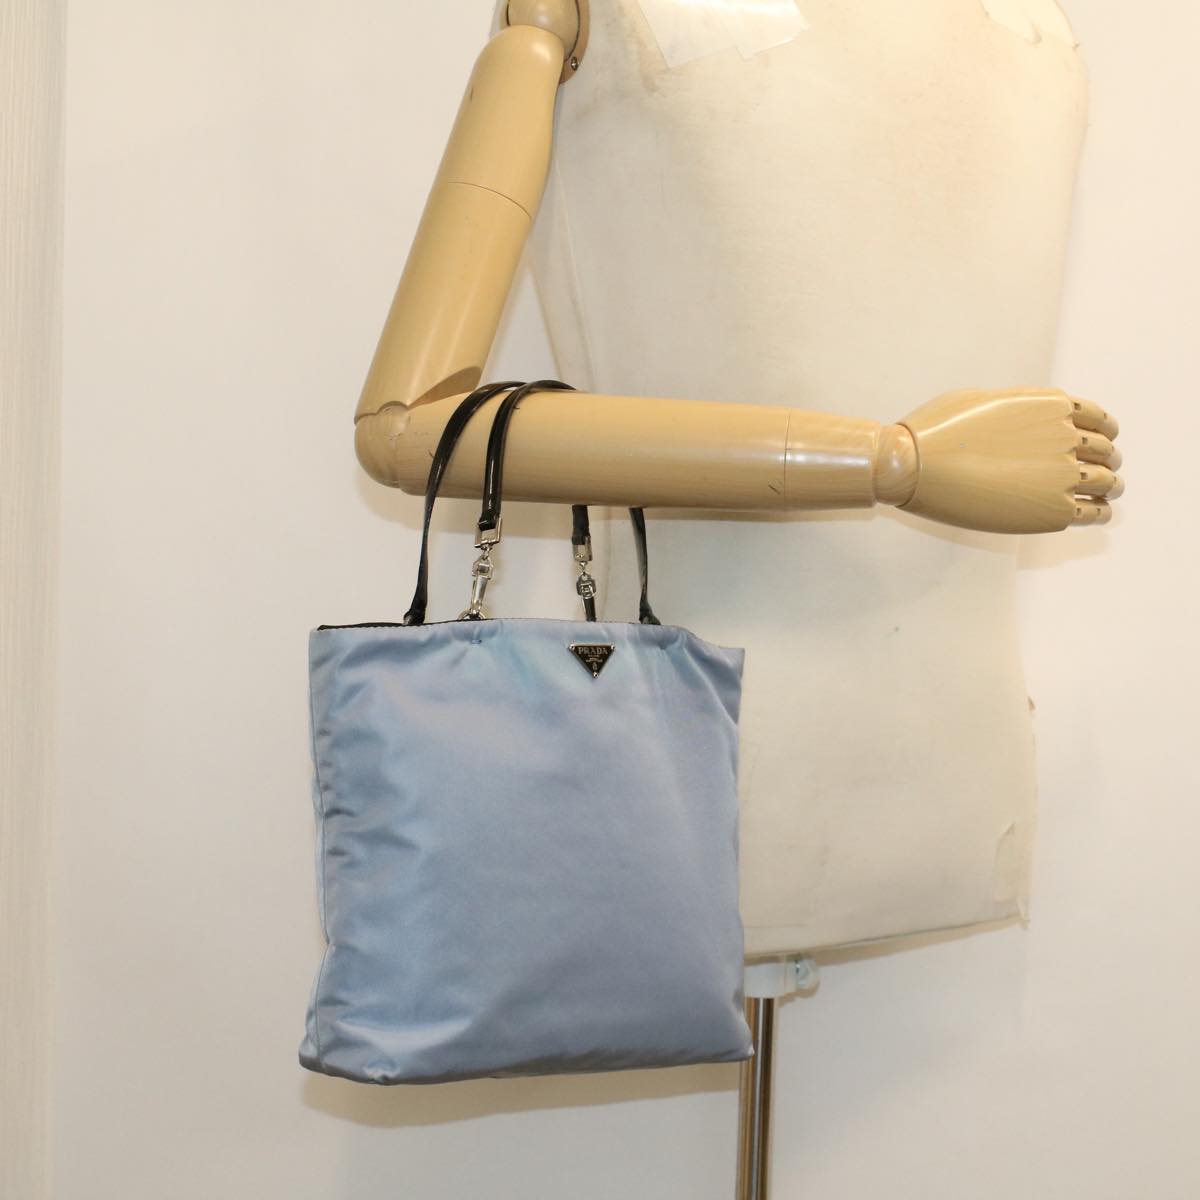 PRADA Hand Bag Nylon Light Blue Auth cl559